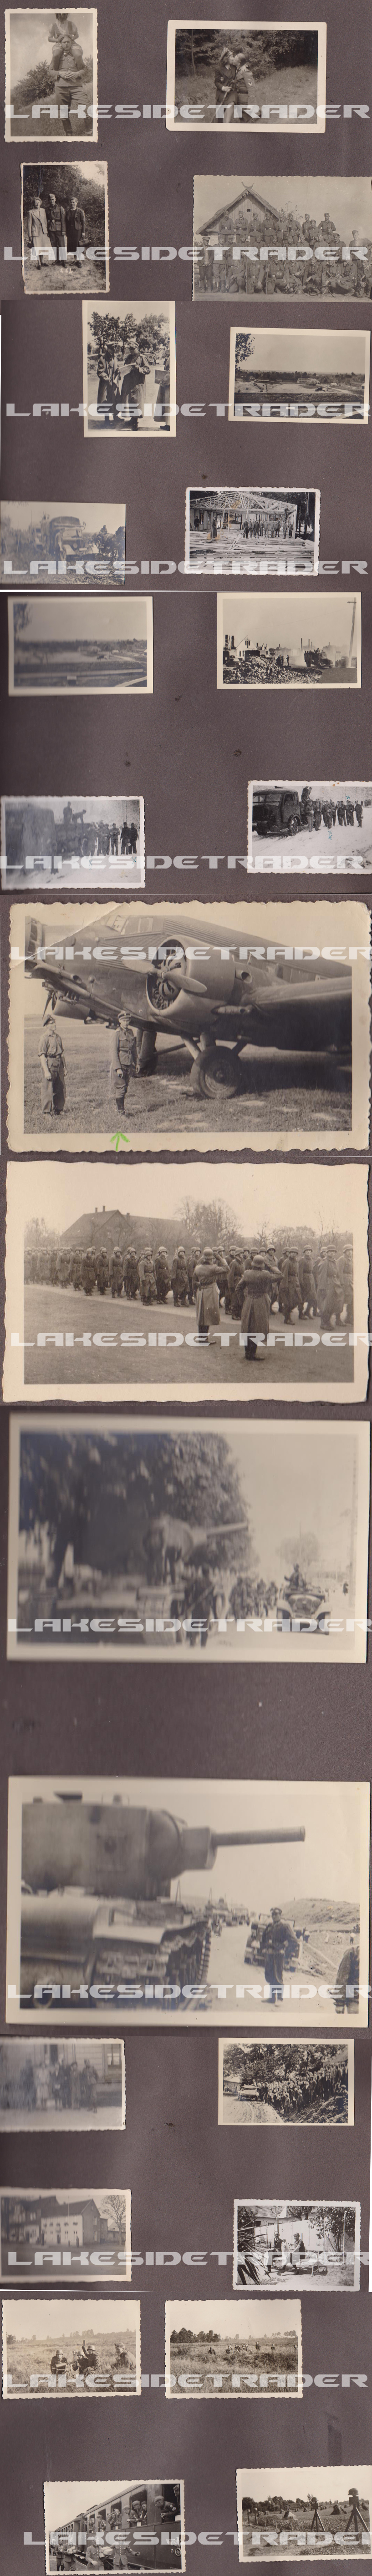 Waffen SS Photo Album